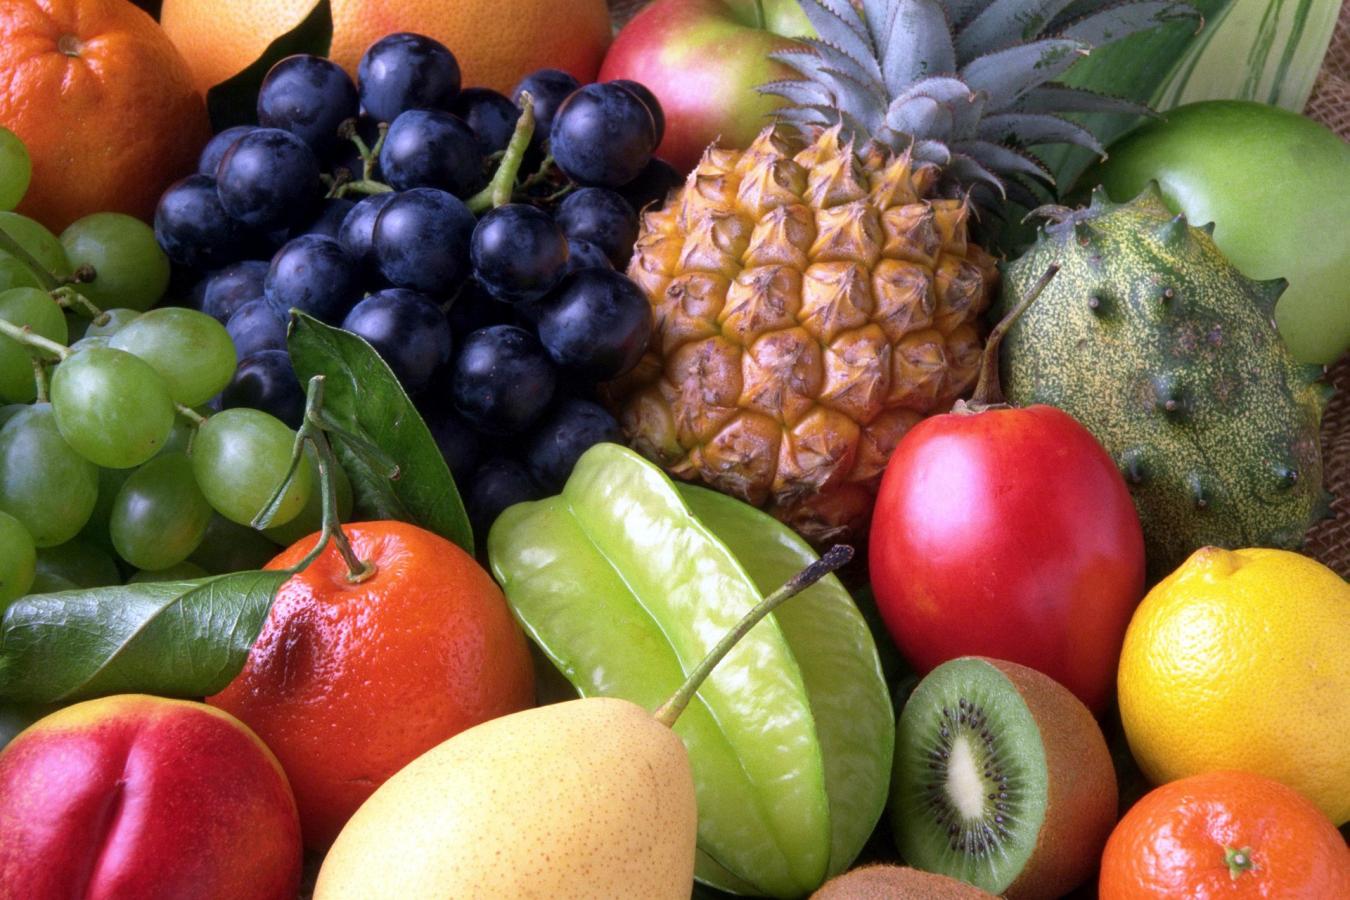 Capa - Experiência de um fruticultor - Fruta variada